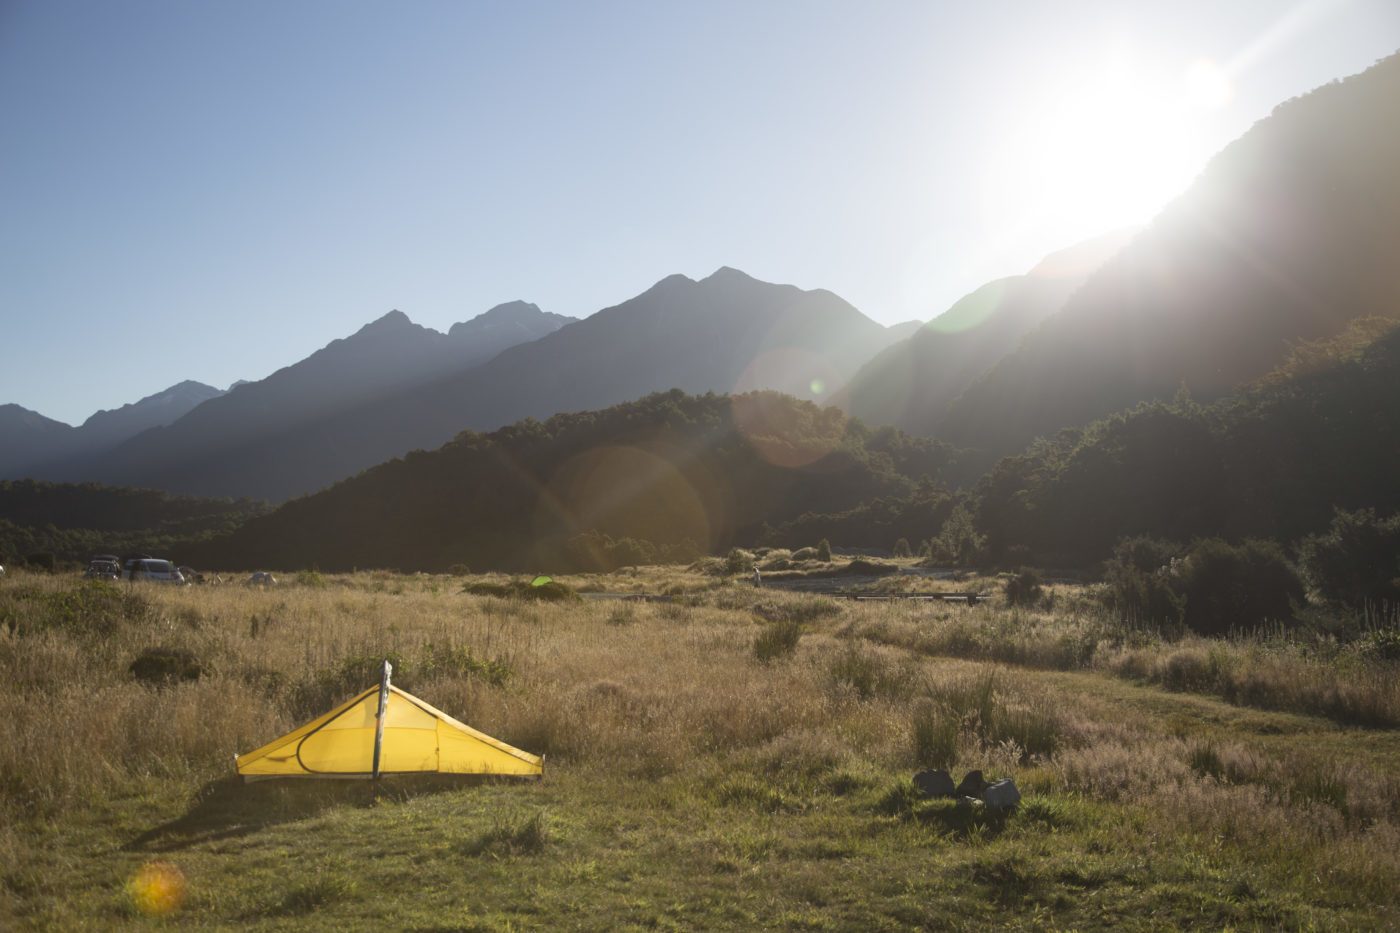 ニュージーランドで僕が泊まってよかったと思うオススメキャンプ場を５つ紹介 キャンプ初心者向け総合情報ブログ Hyper Camp Creators